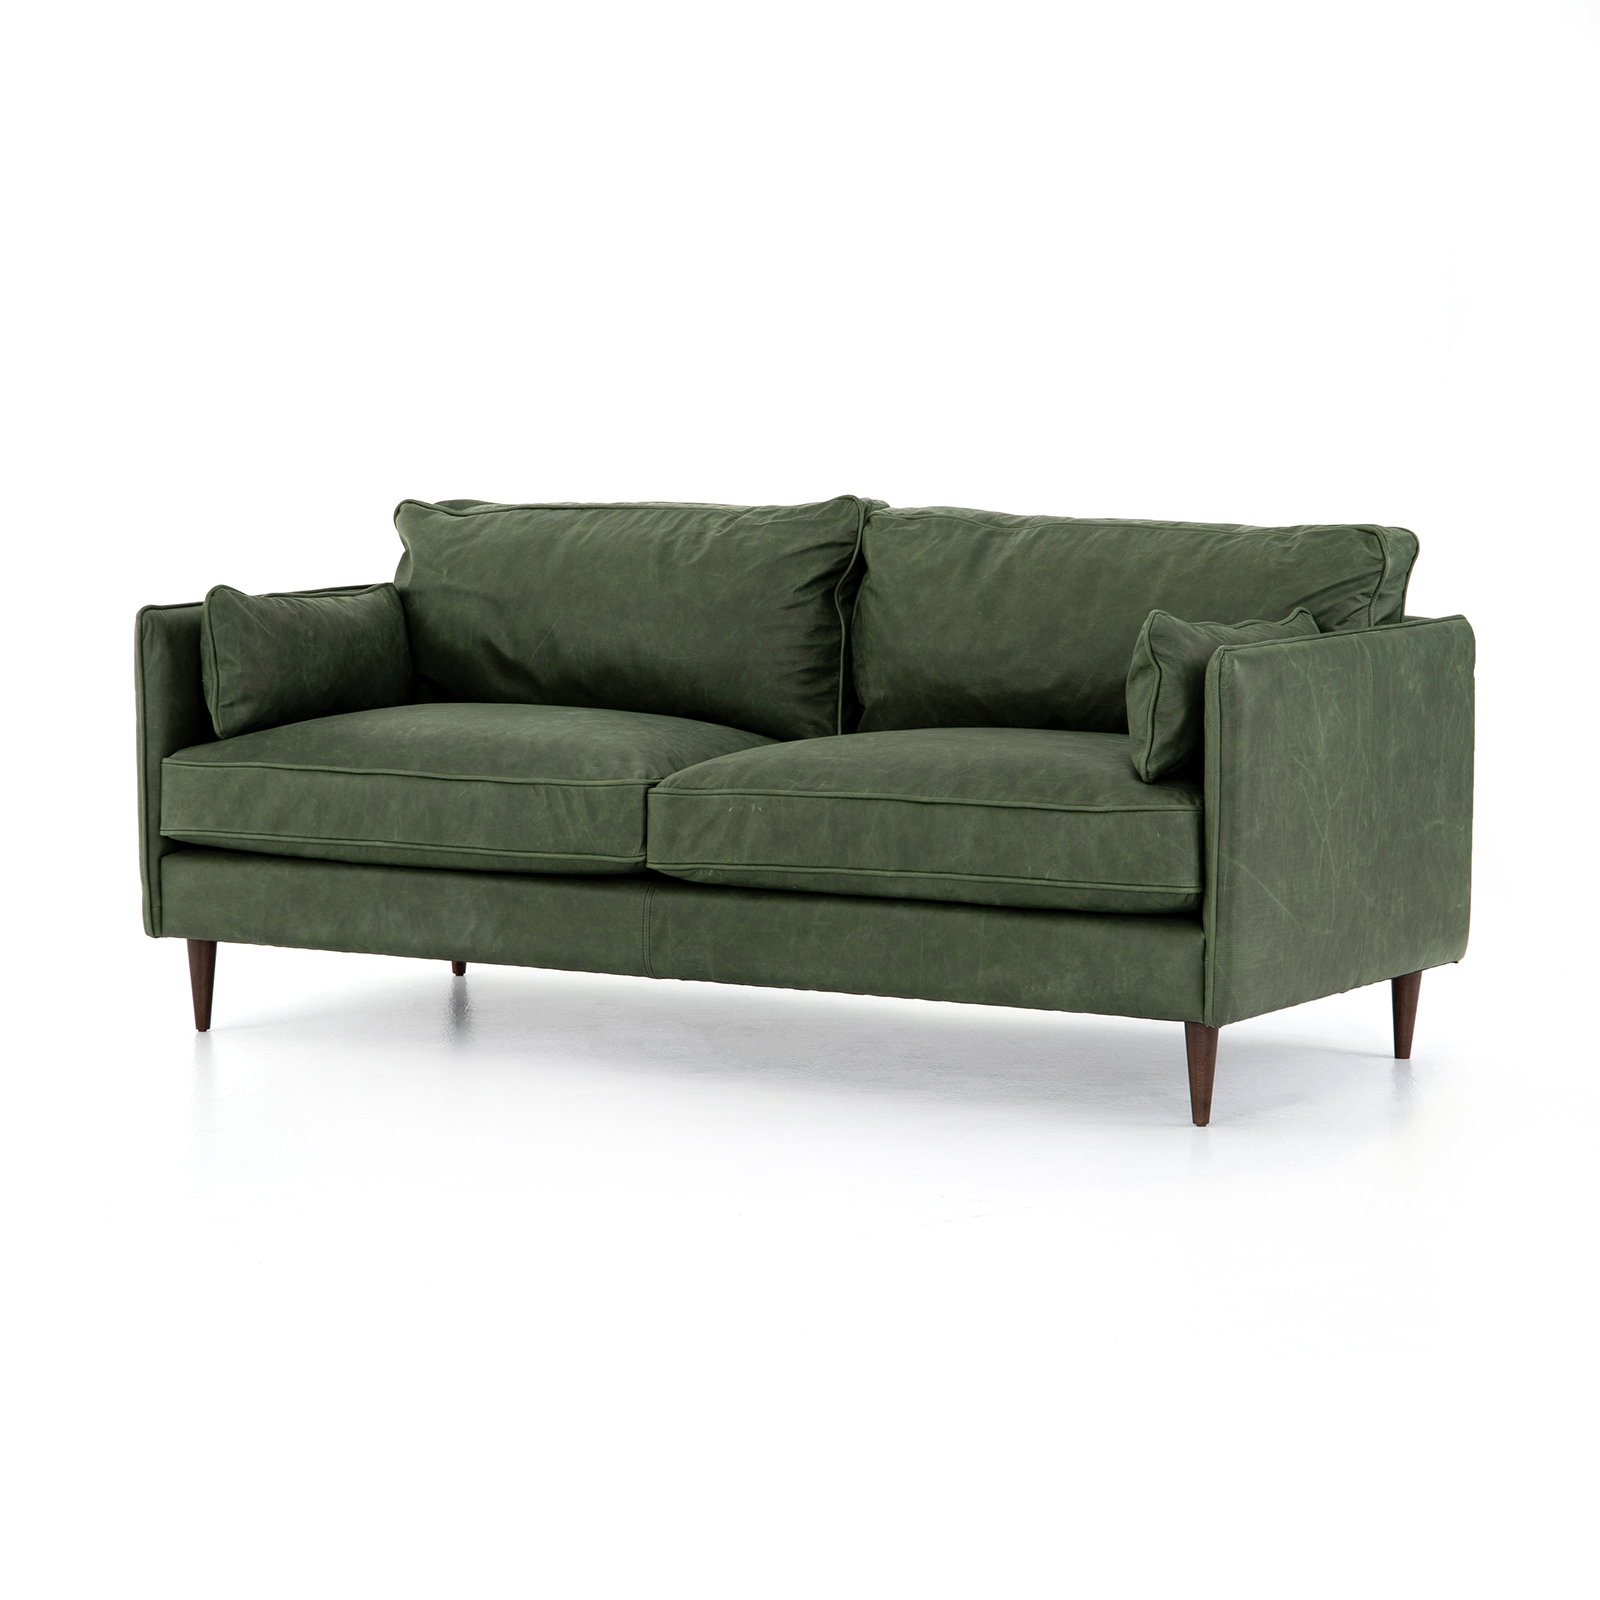 Ashford 76" Sofa